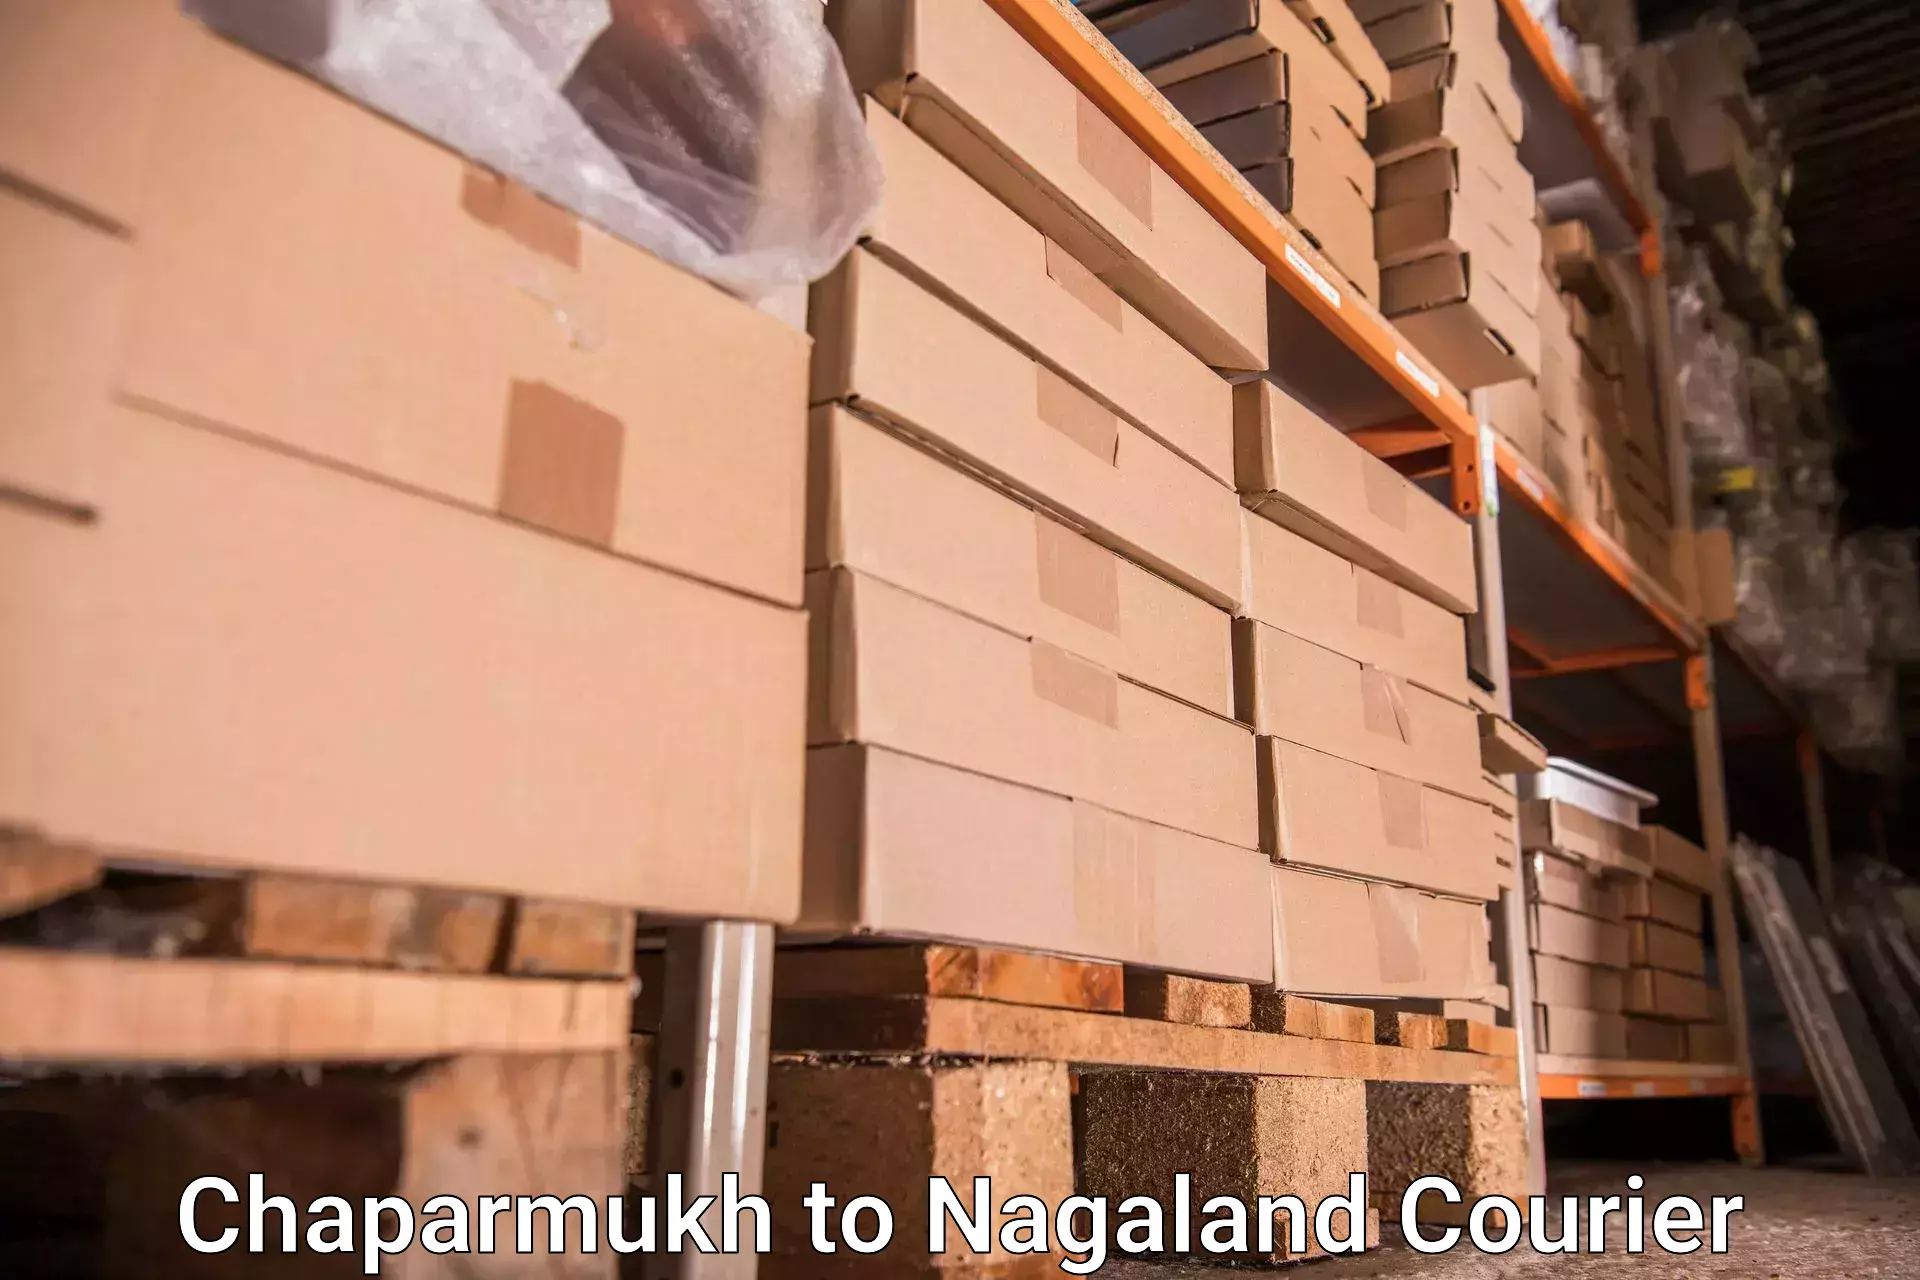 Baggage transport innovation Chaparmukh to NIT Nagaland